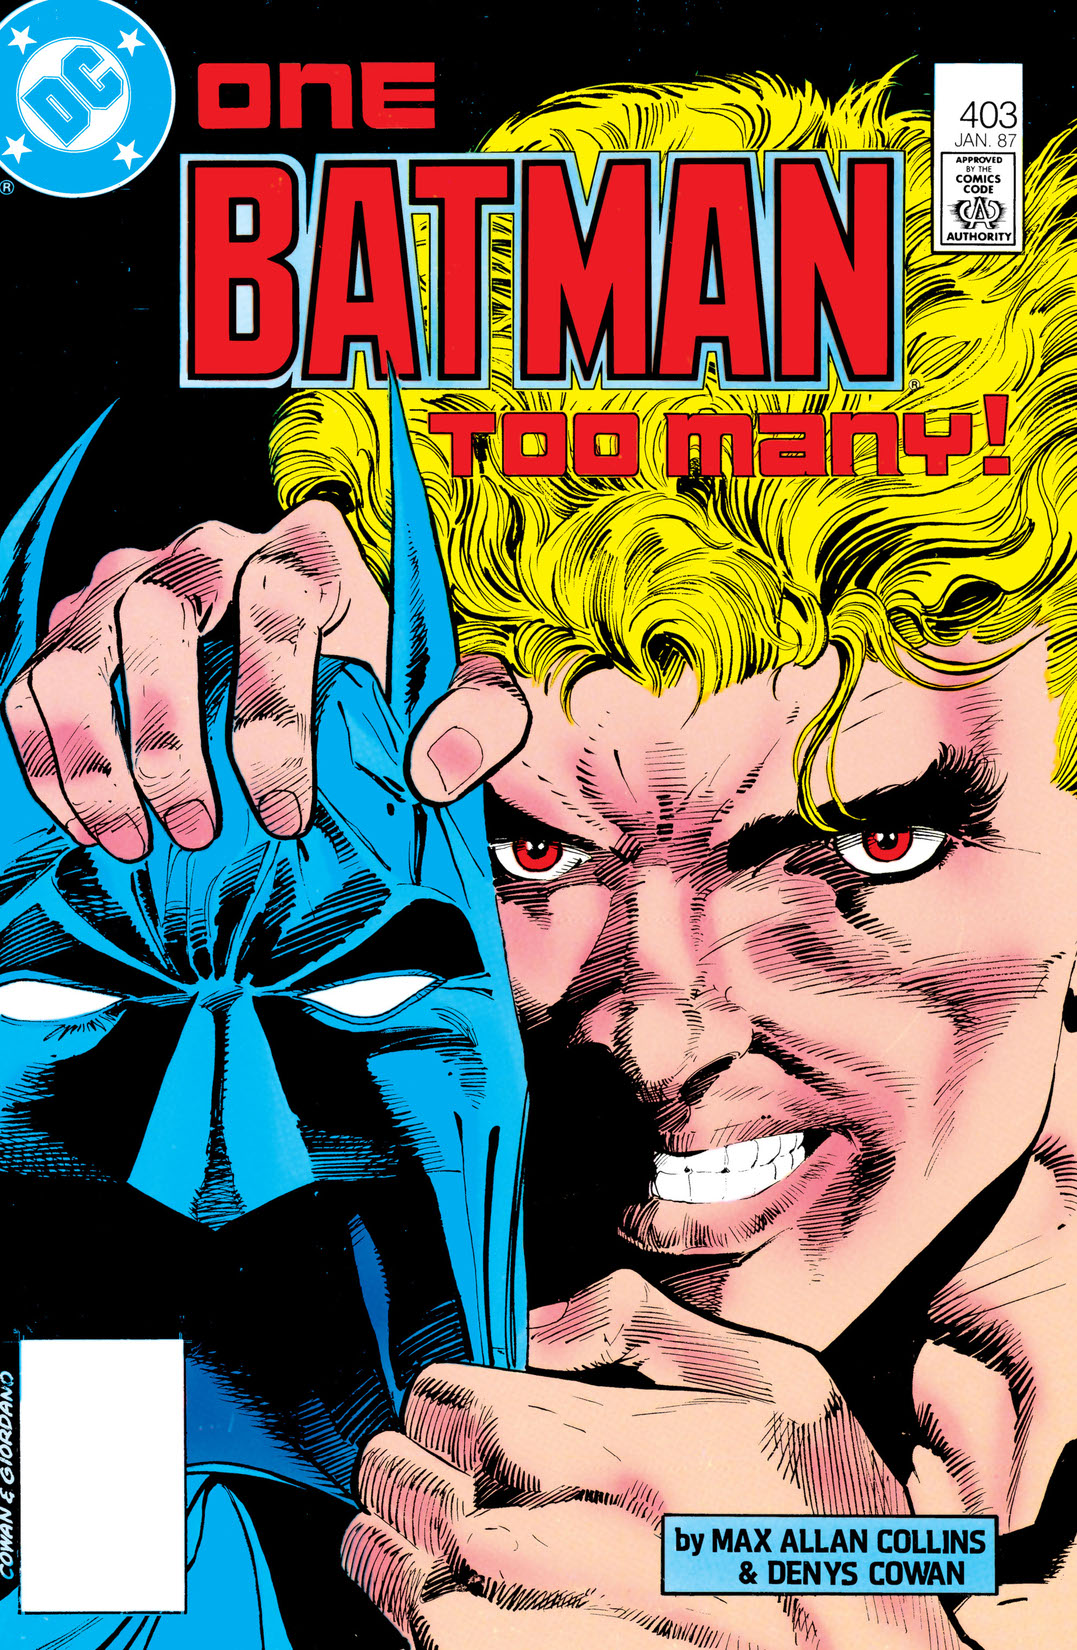 Batman (1940-) #403 preview images